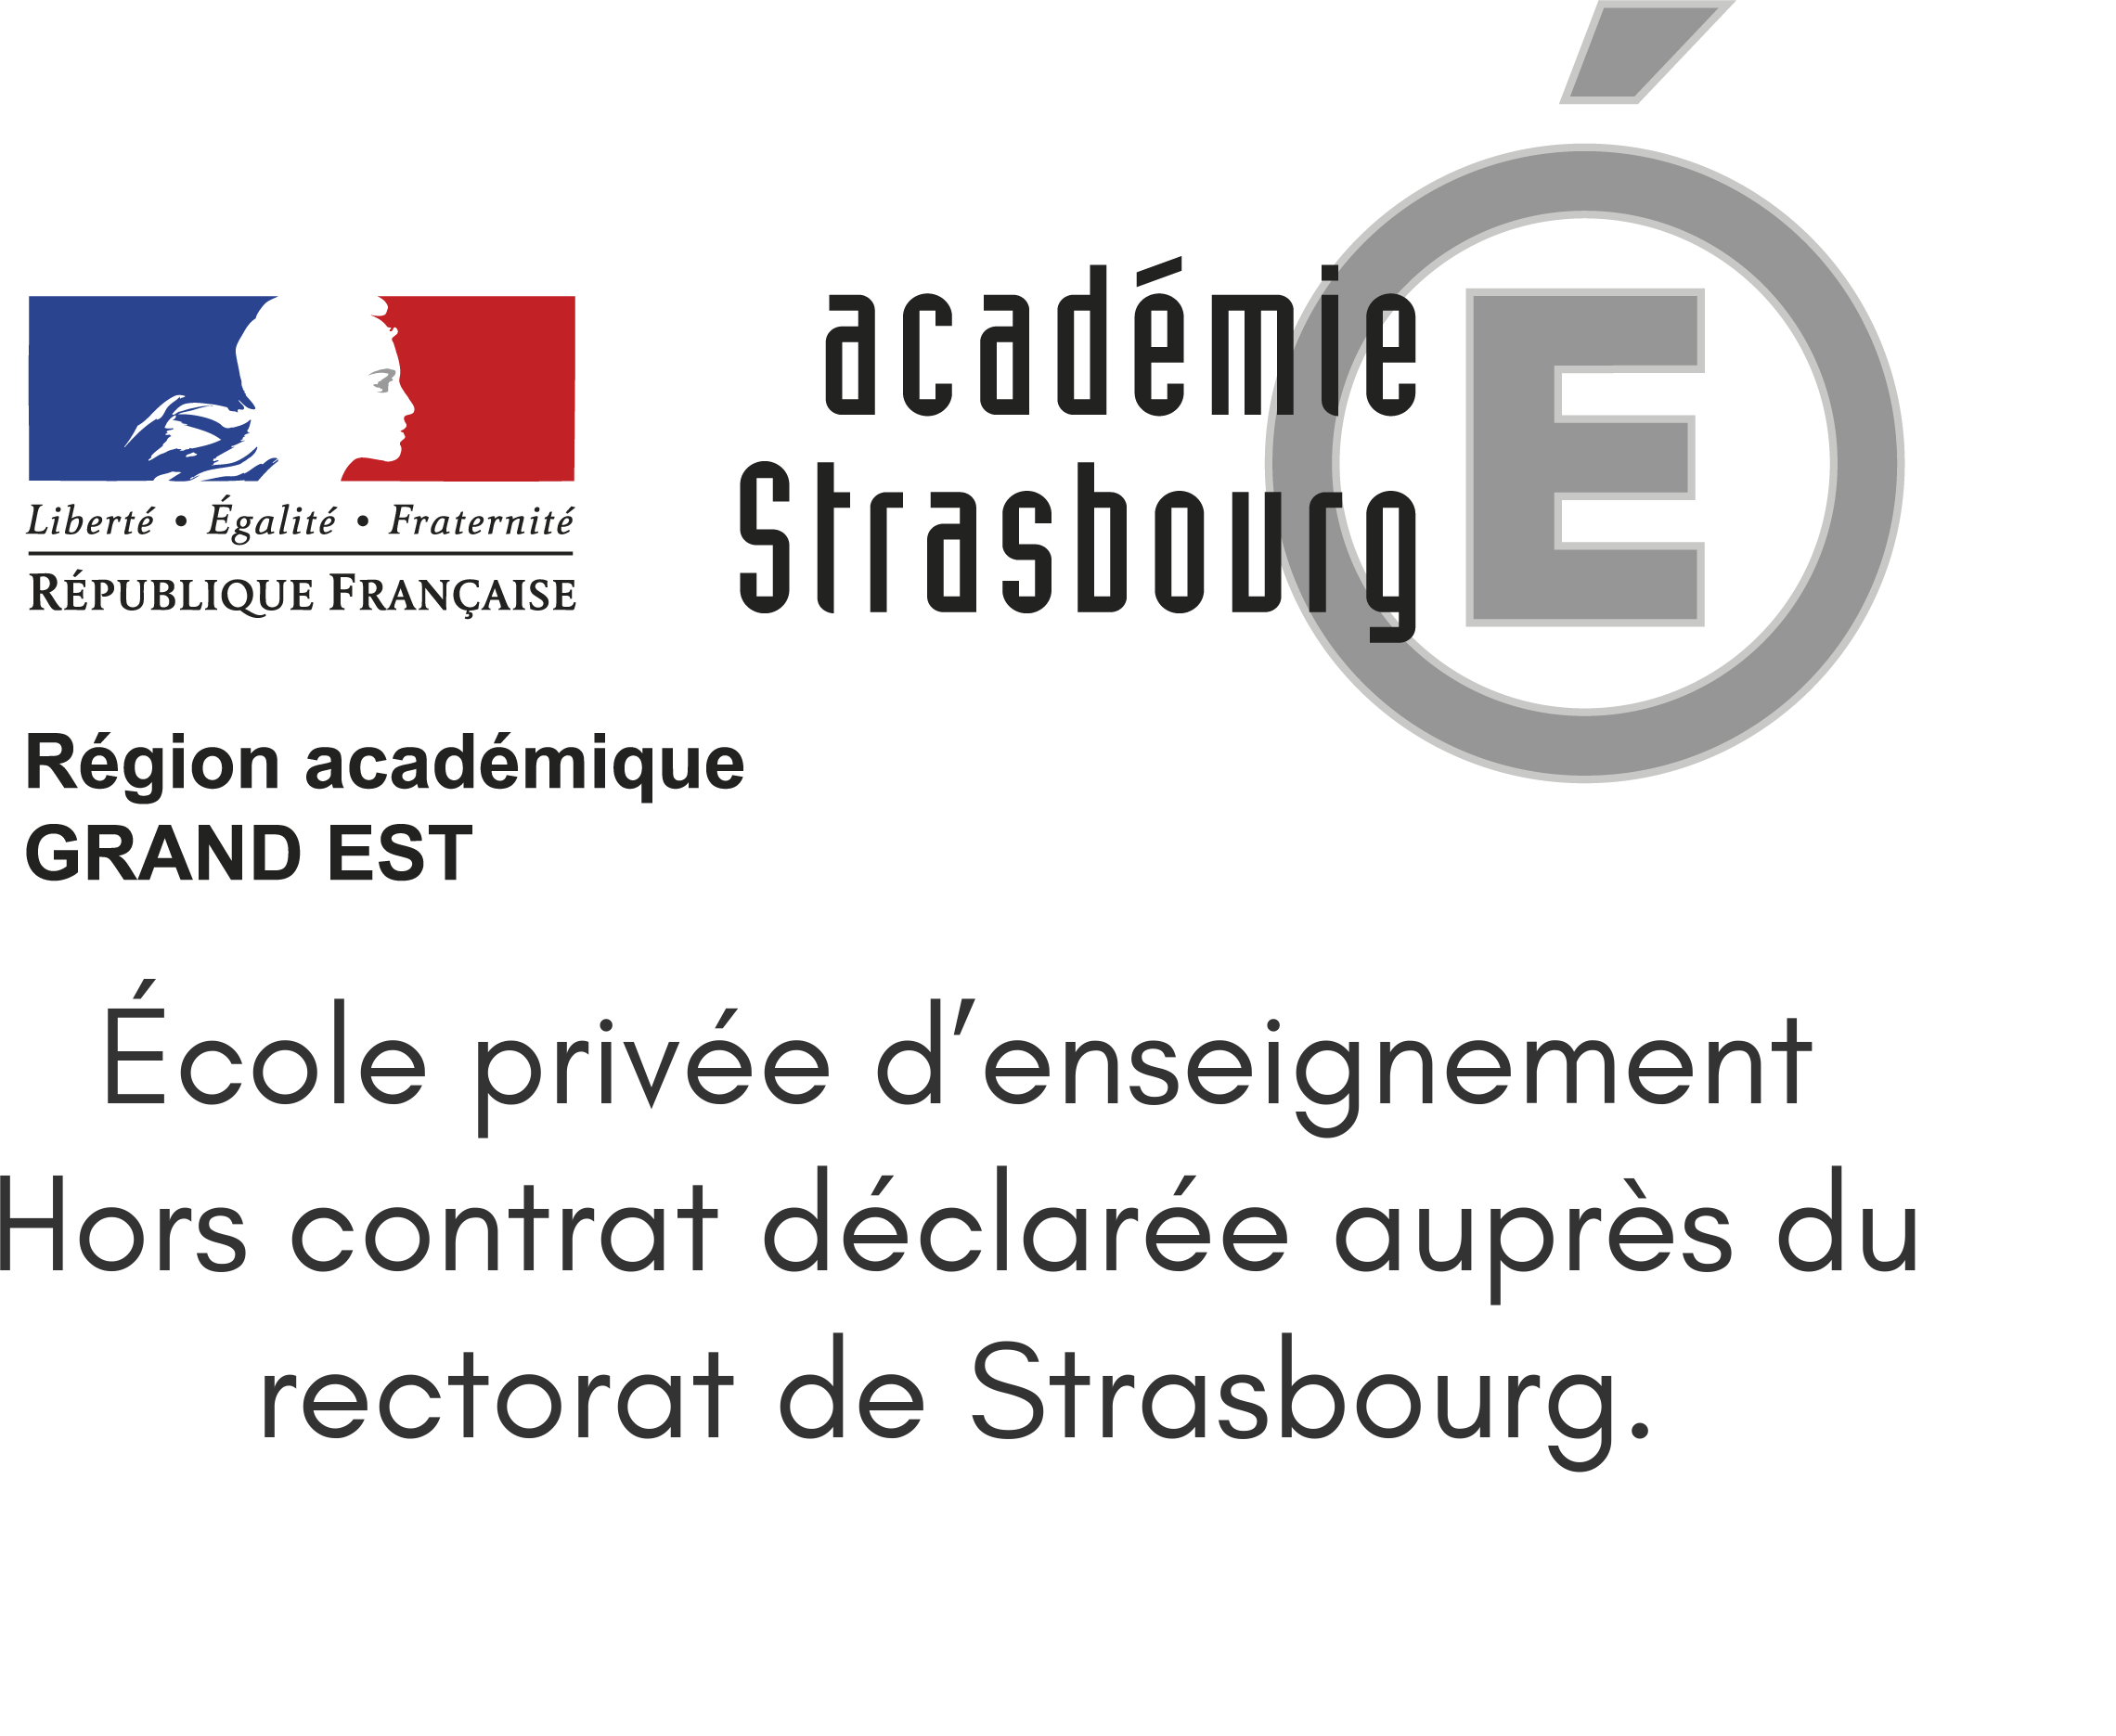 Appuiformation logo ecole privee d'enseignement hors contrat declaree aupres du rectorat de strasbourg